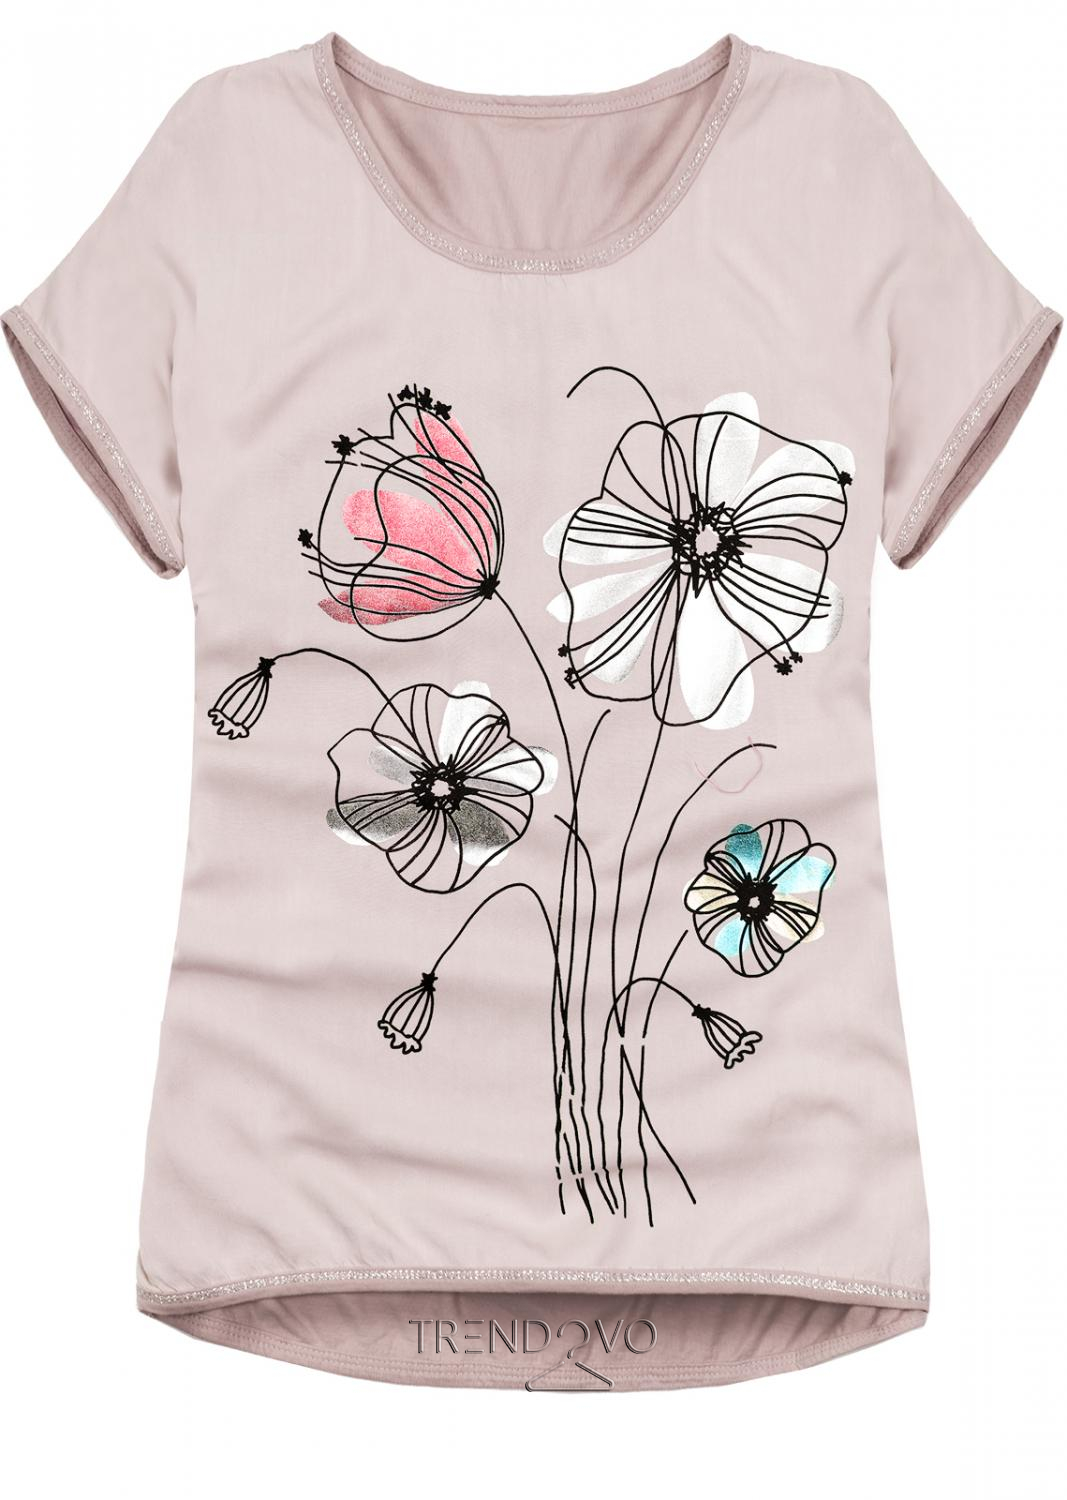 Svetloružové tričko s potlačou kvetov